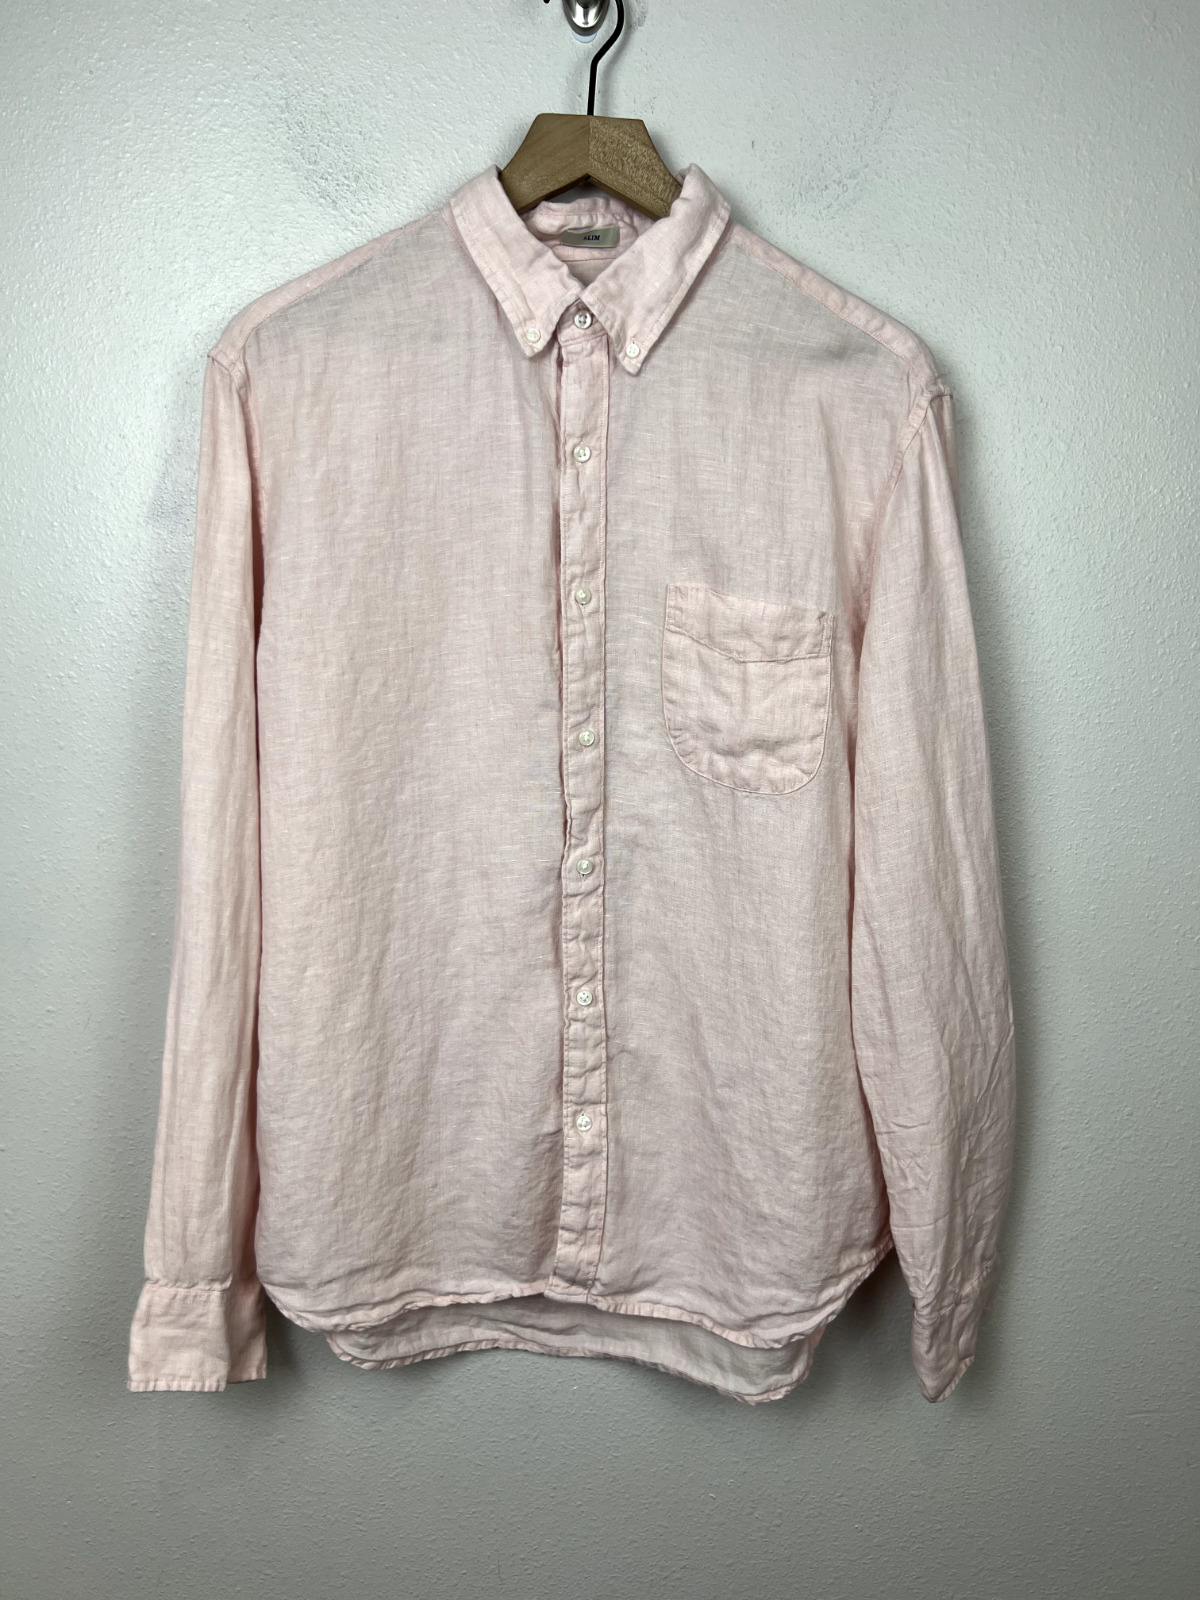 J Crew Baird McNutt Irish Linen Shirt Large Slim Fit Pink Long Sleeve Button Up